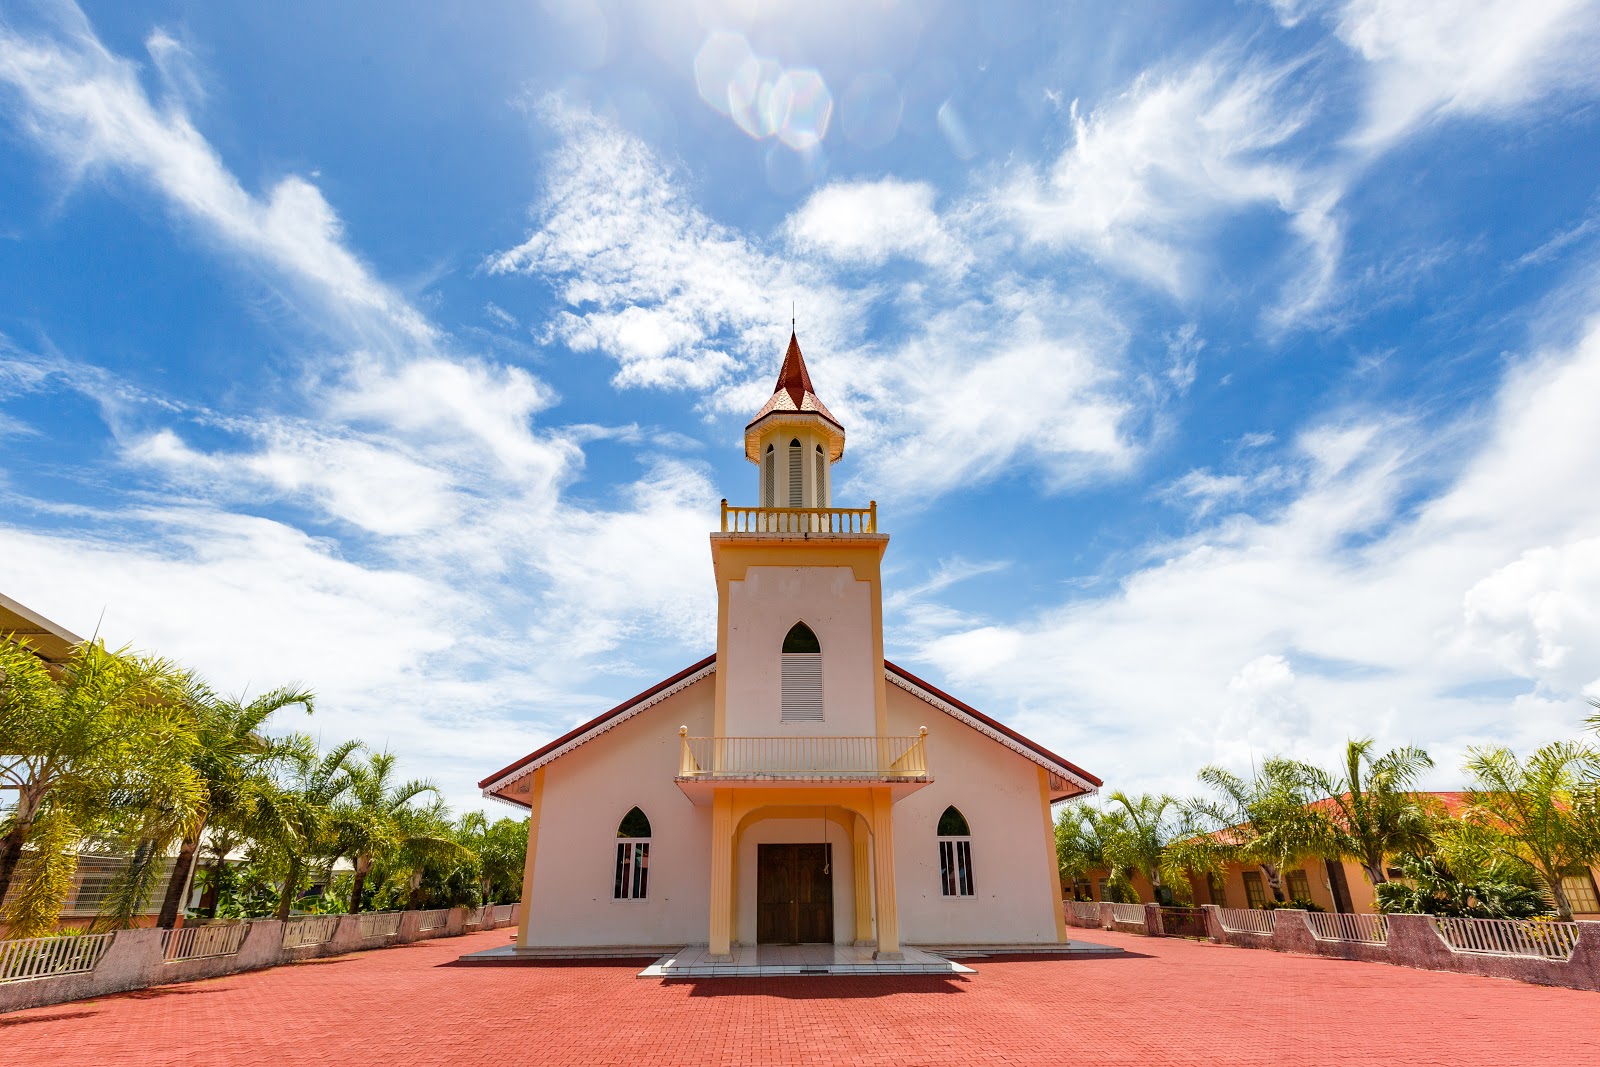 Bora Bora｜Maohi Protestant Church